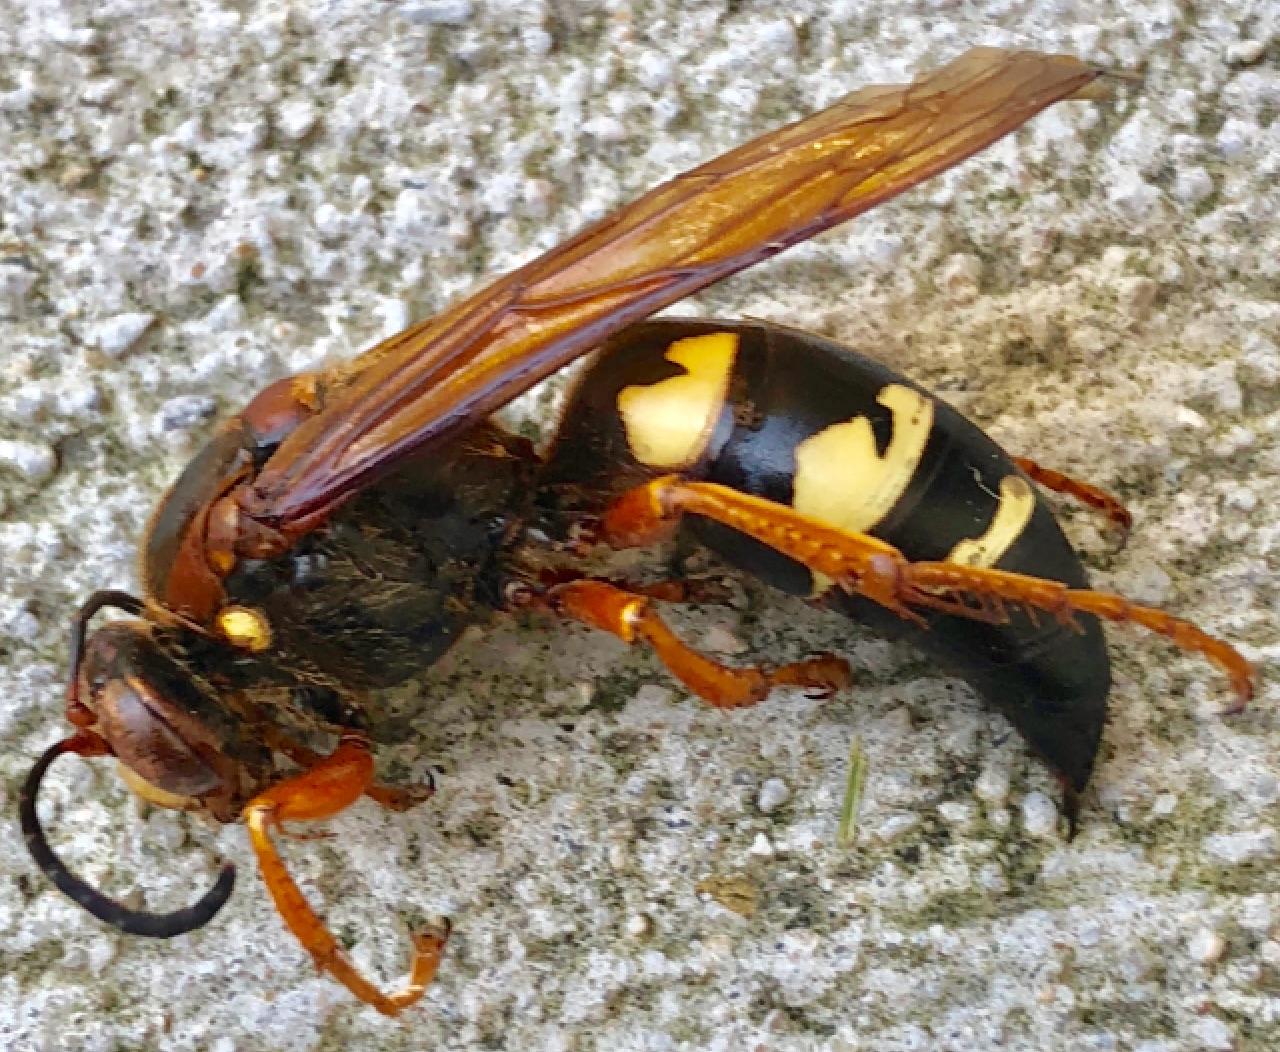 Eastern cicada killer (Sphecius speciosus)